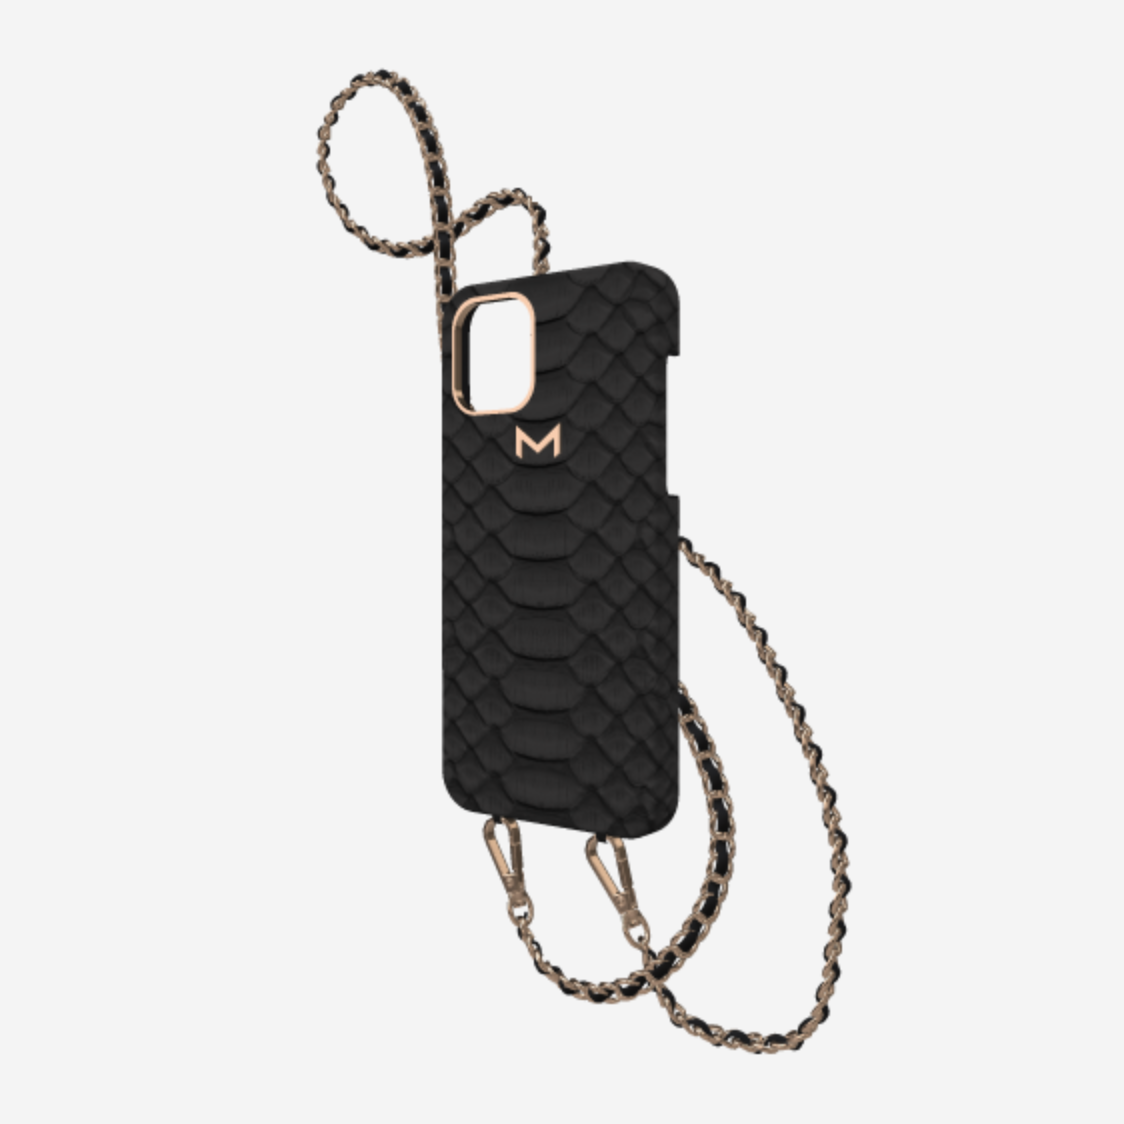 Case for iPhone 12 Pro - Louis Vuitton Black